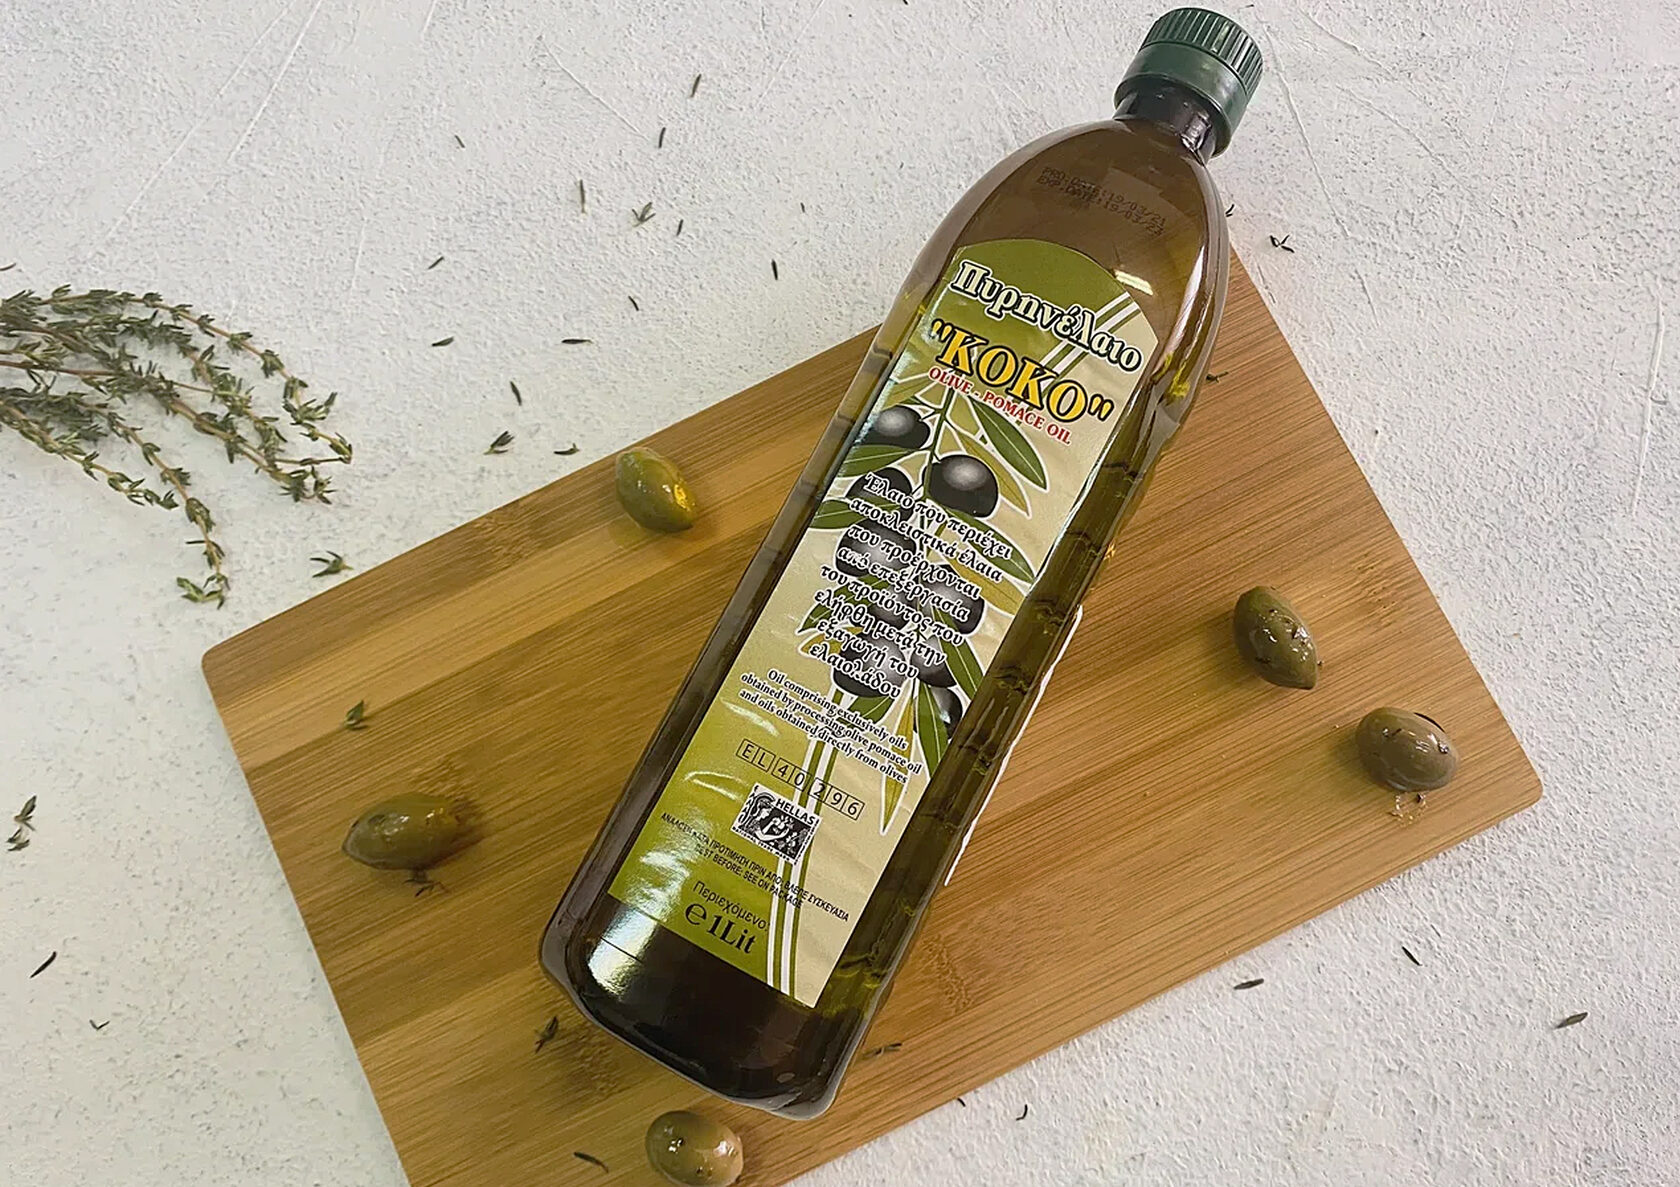 Чем заменить оливковое масло